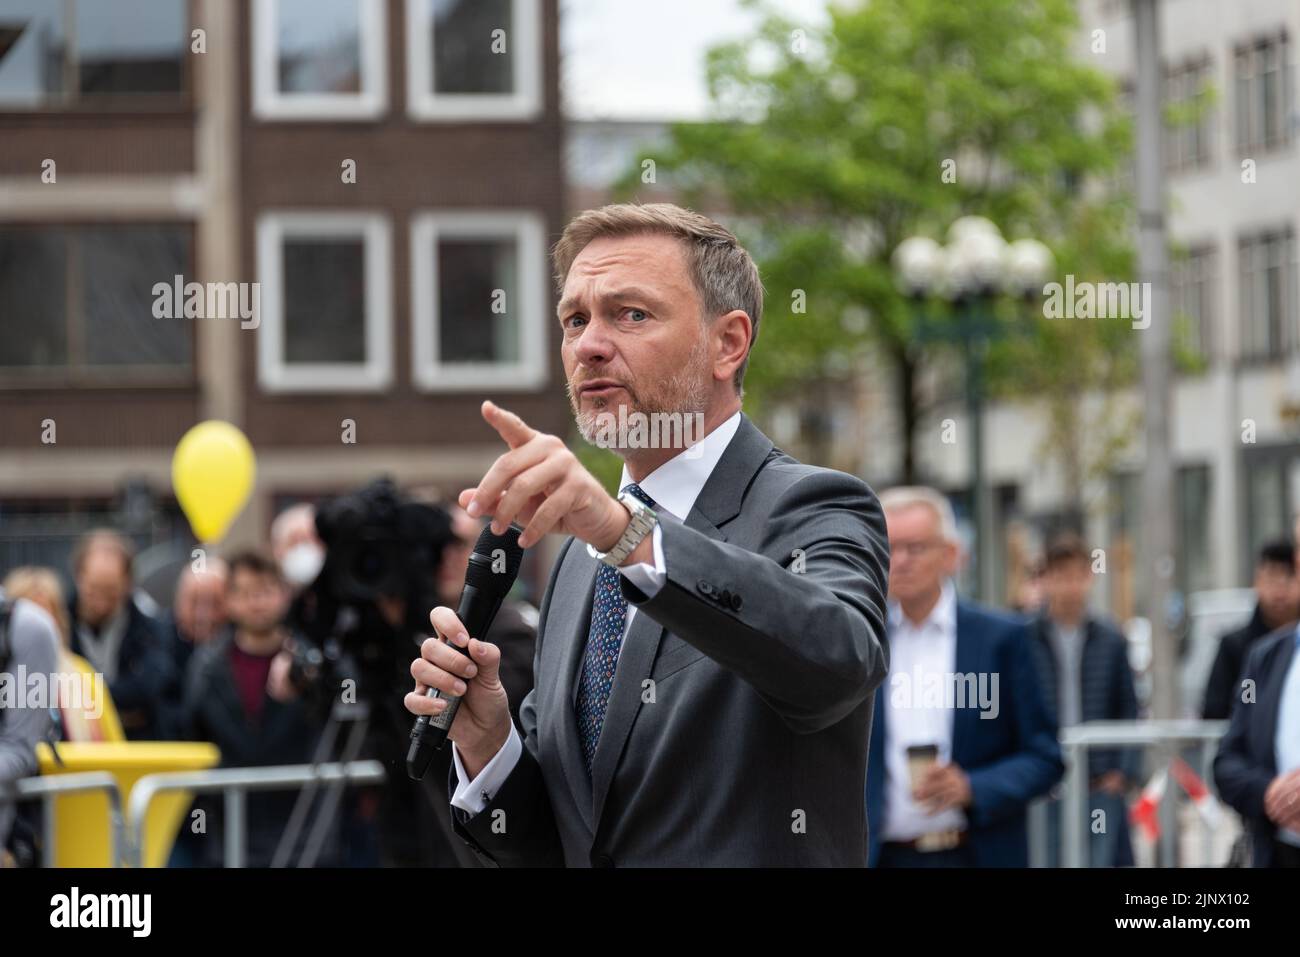 Porträt des deutschen Finanzministers Christian Lindner auf einer Wahlveranstaltung in Kiel Stock Photo